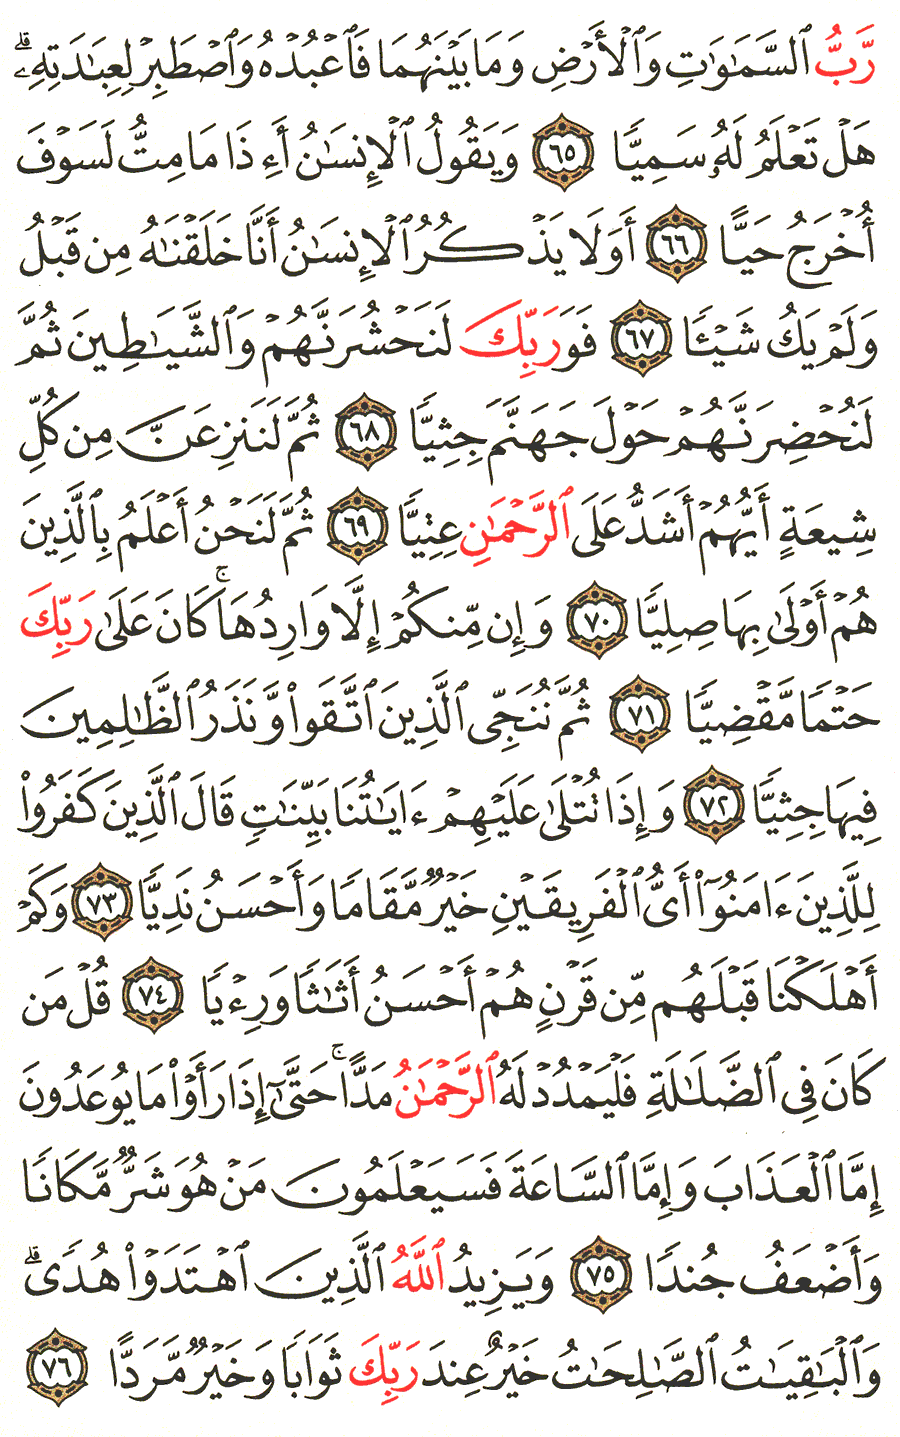 الصفحة 310 من القرآن الكريم